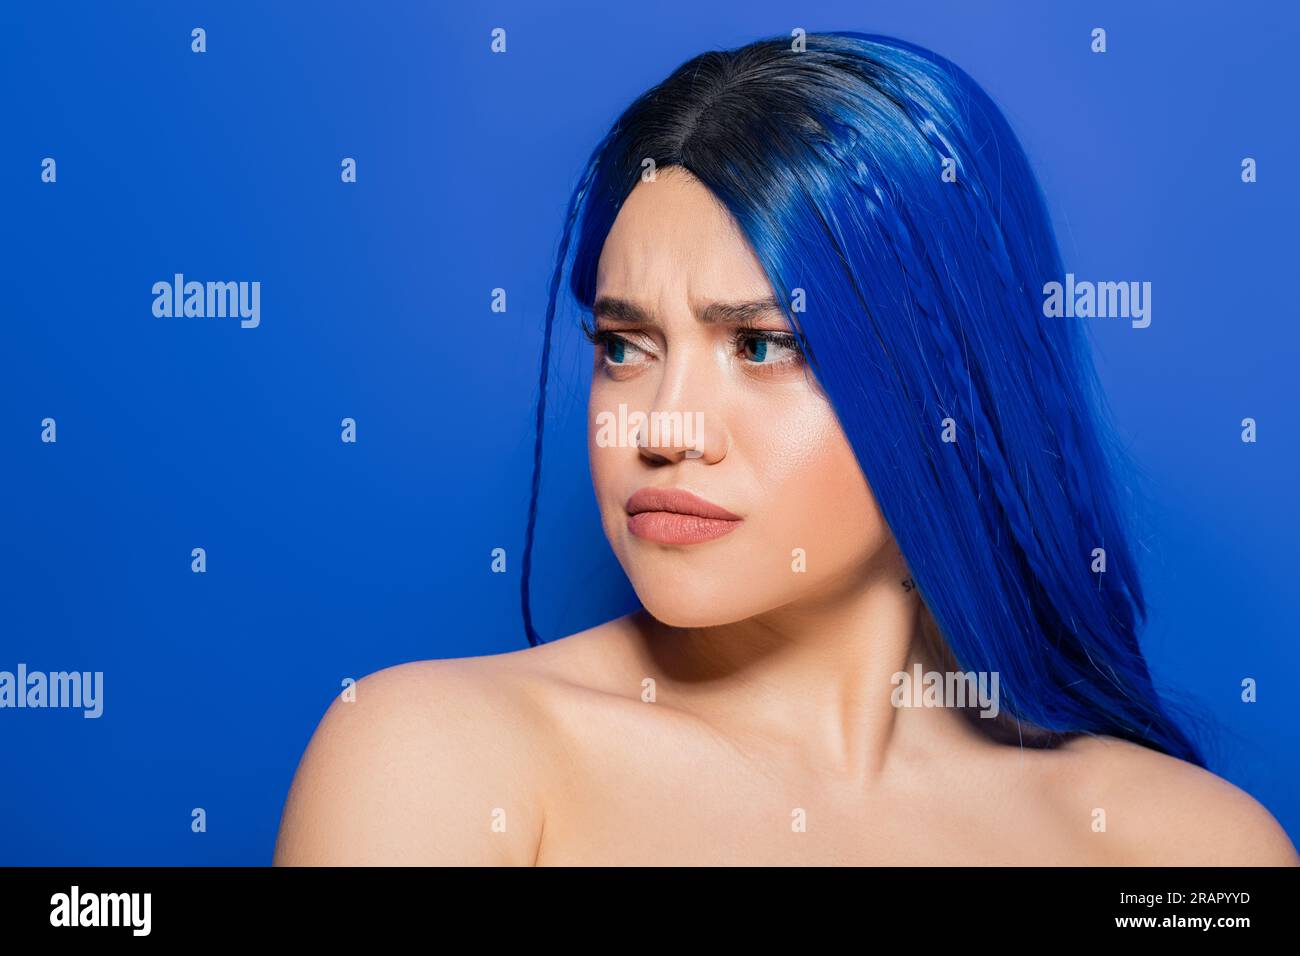 portrait de femme insatisfaite avec des cheveux teints regardant loin sur fond bleu, couleur des cheveux, individualisme, modèle féminin avec maquillage et hairstyl tendance Banque D'Images